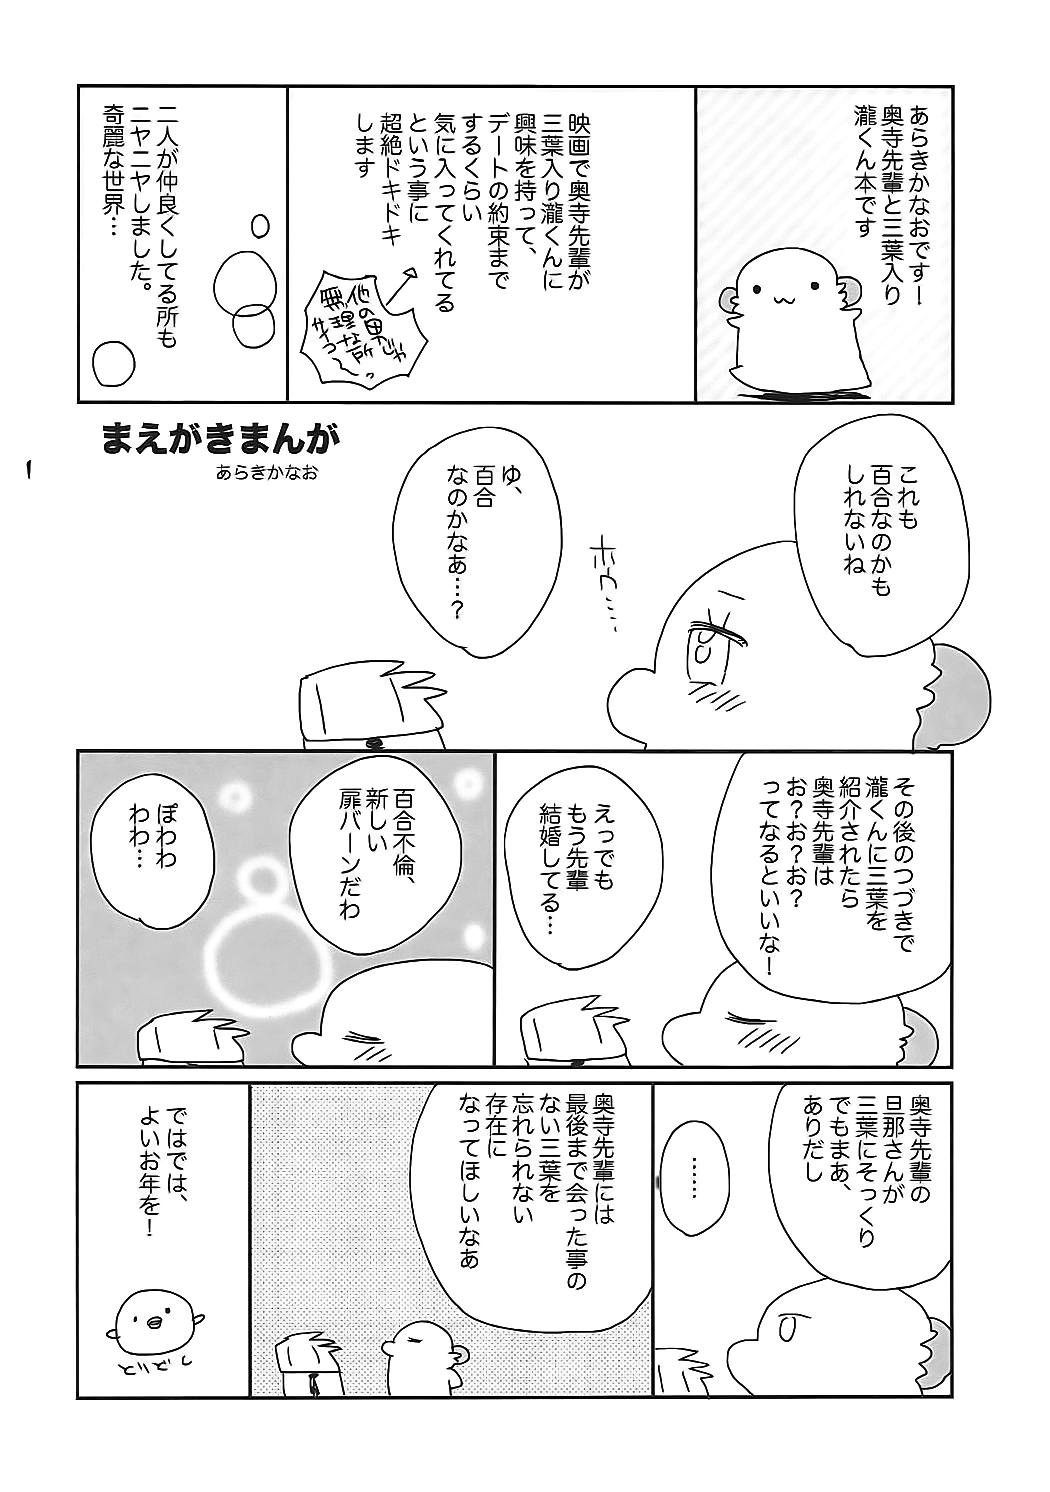 Pure 18 Okudera-senpai wa Shiranai - Kimi no na wa. Hetero - Page 3